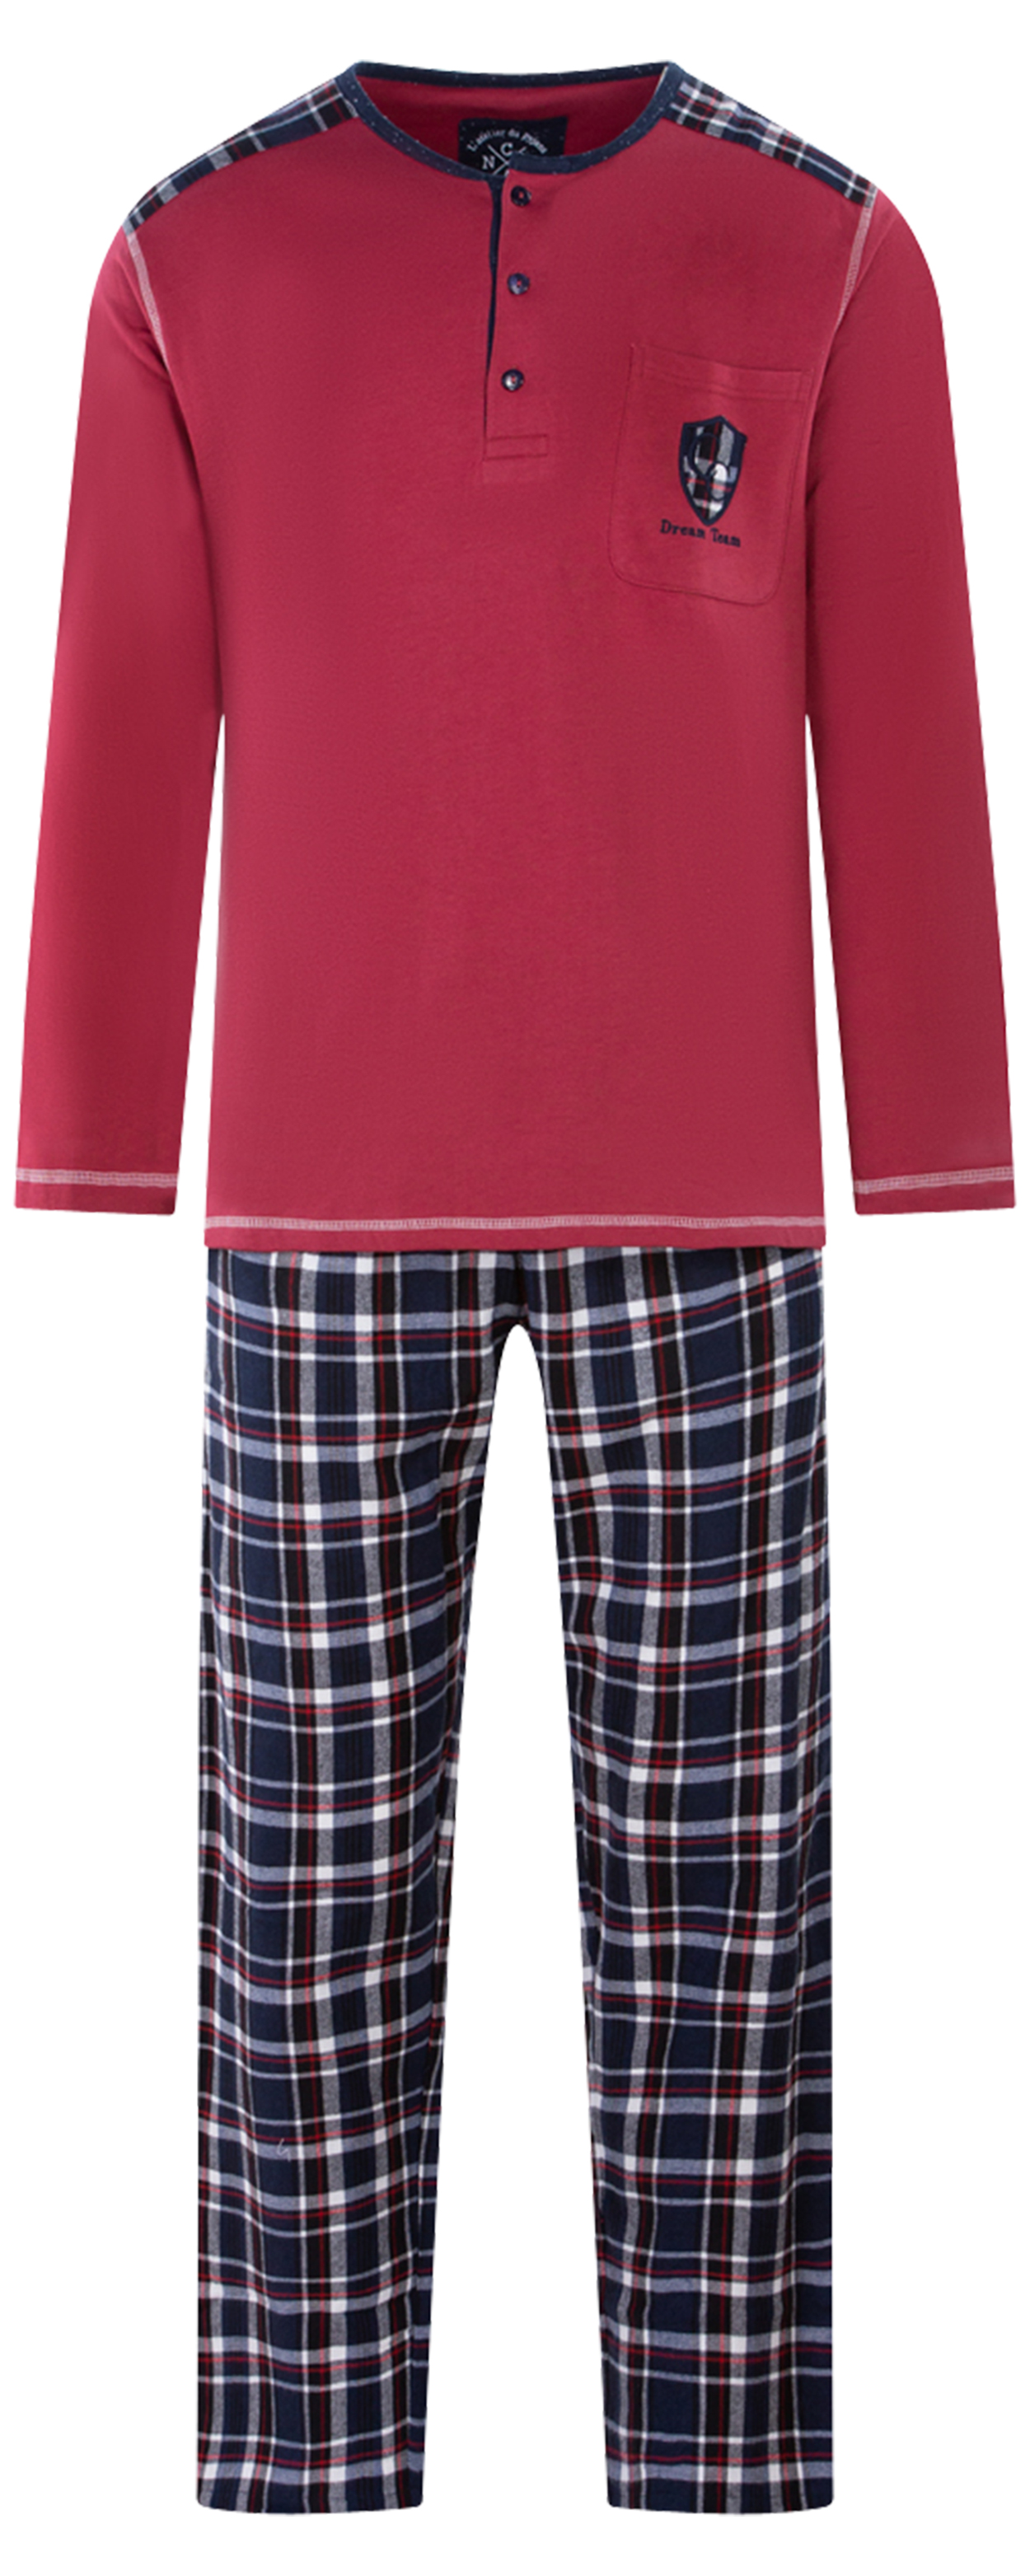 pyjama long christian cane en coton avec manches longues et col tunisien rouge à carreaux